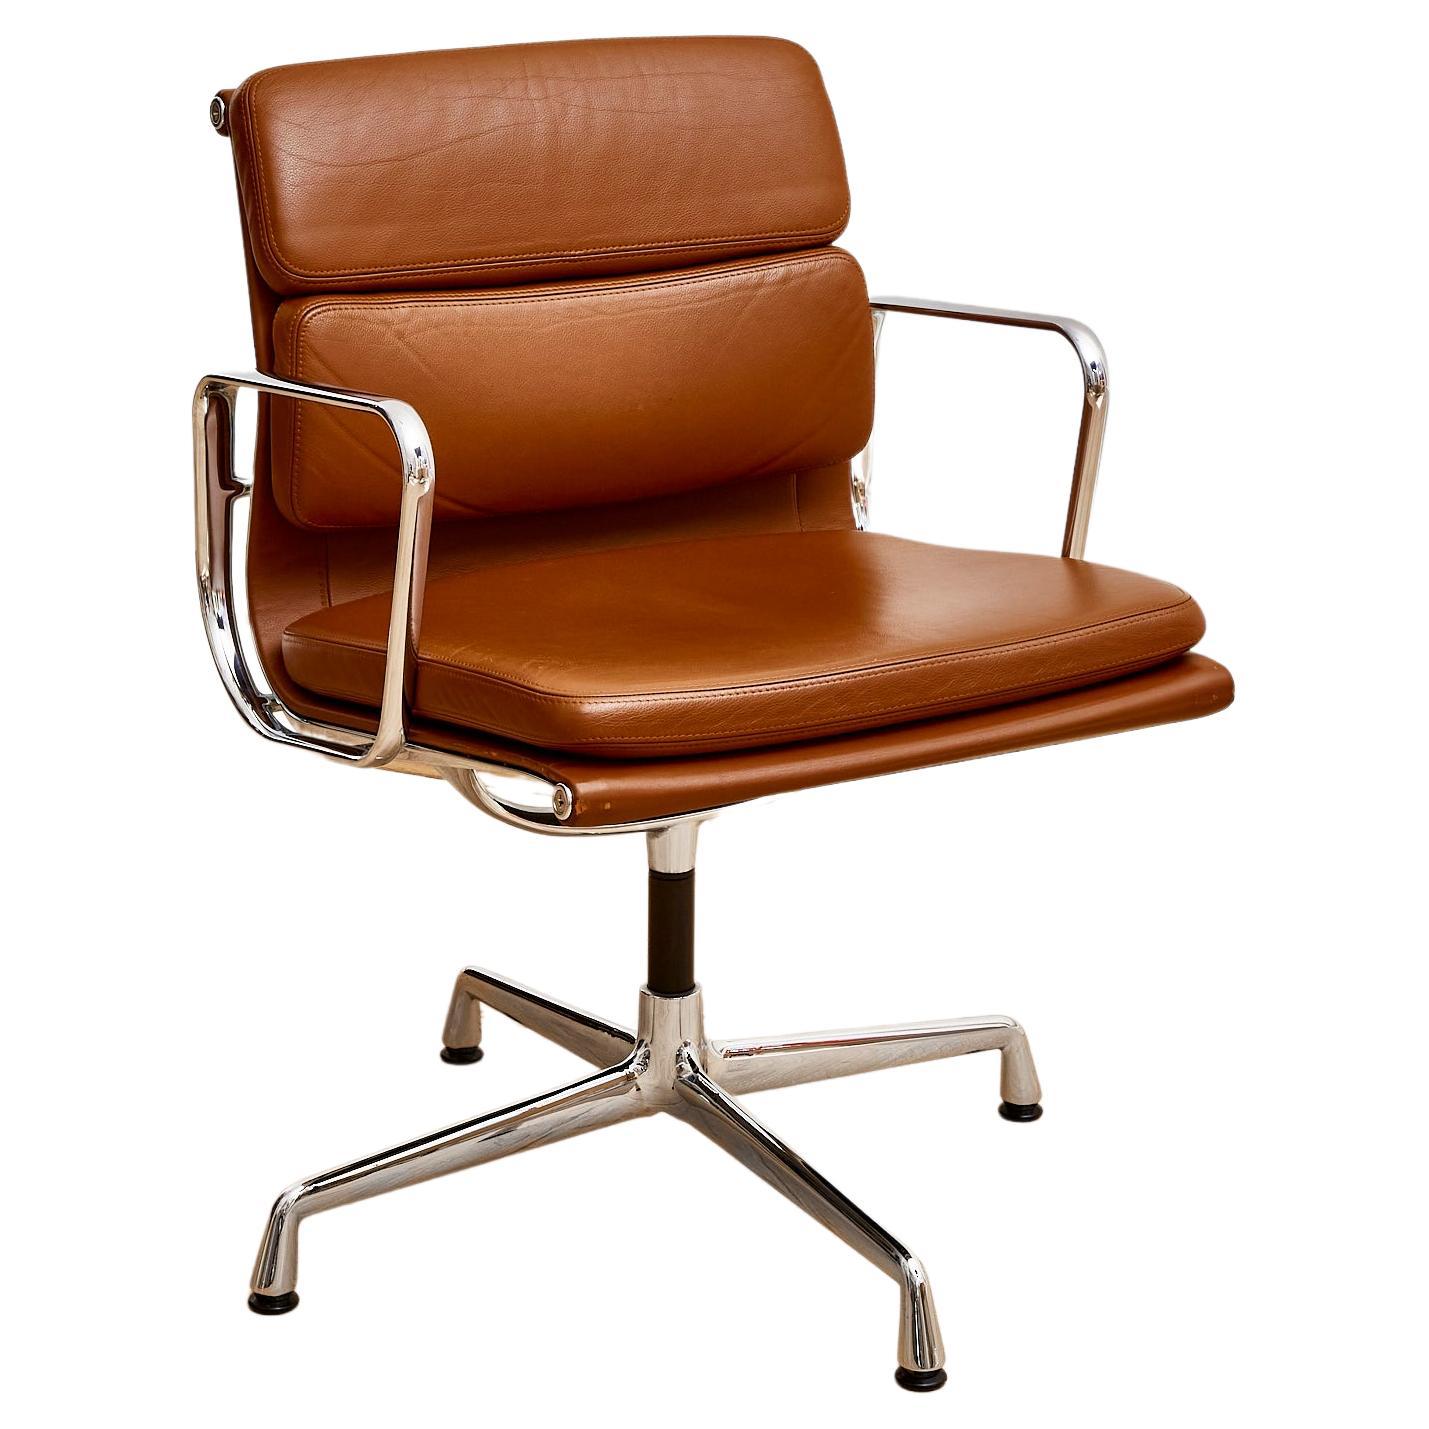 nhappez votre espace de travail d'une touche d'élégance classique et d'un confort exceptionnel avec la chaise de bureau Charles et Ray Eames EA 208 Soft Pad de Vitra, au design intemporel et iconique qui allie harmonieusement style et